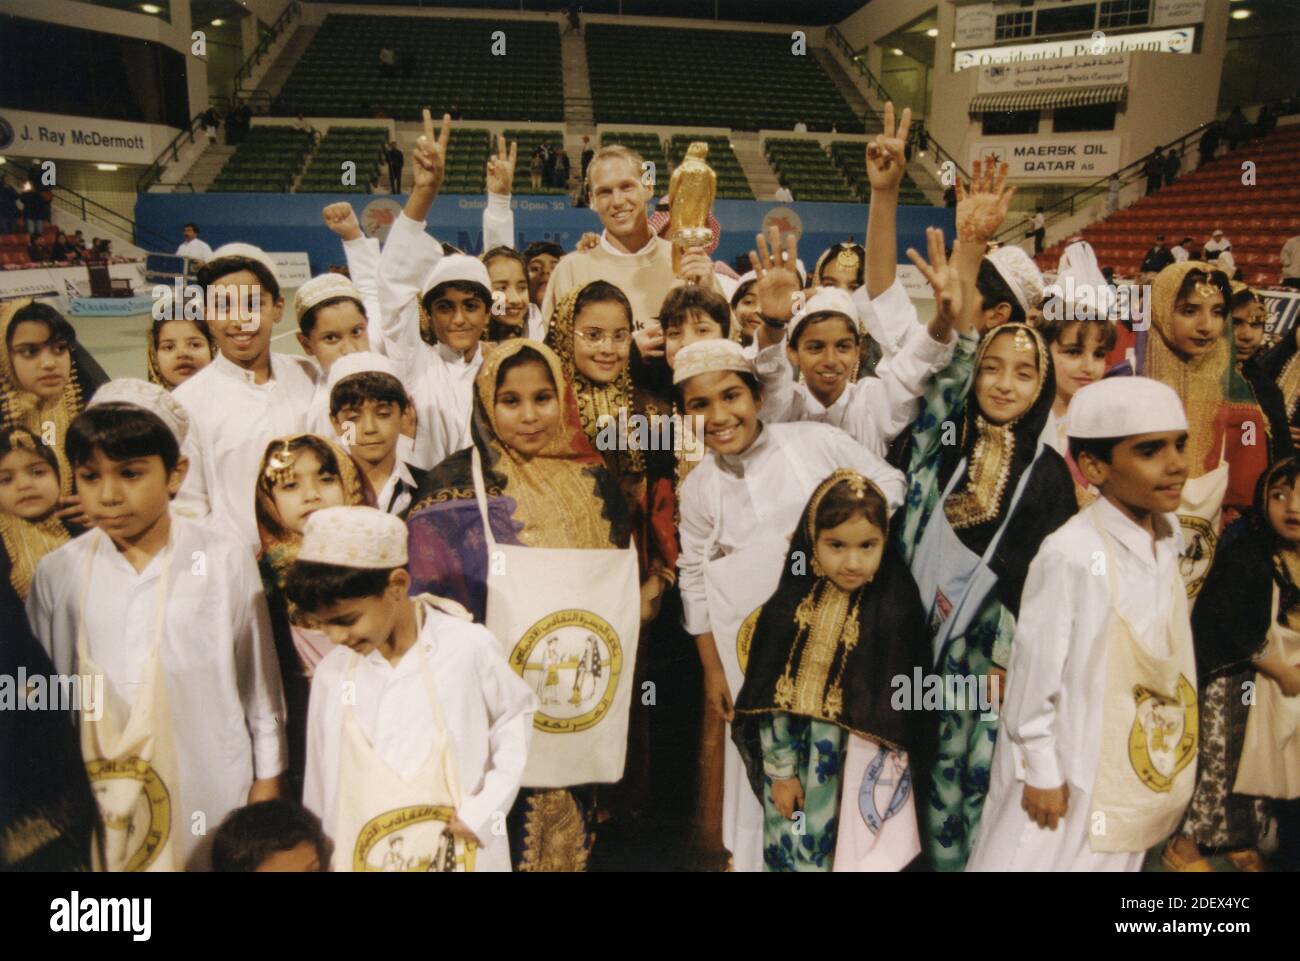 Niños alrededor del ganador del torneo de tenis, Qatar 1990 Foto de stock